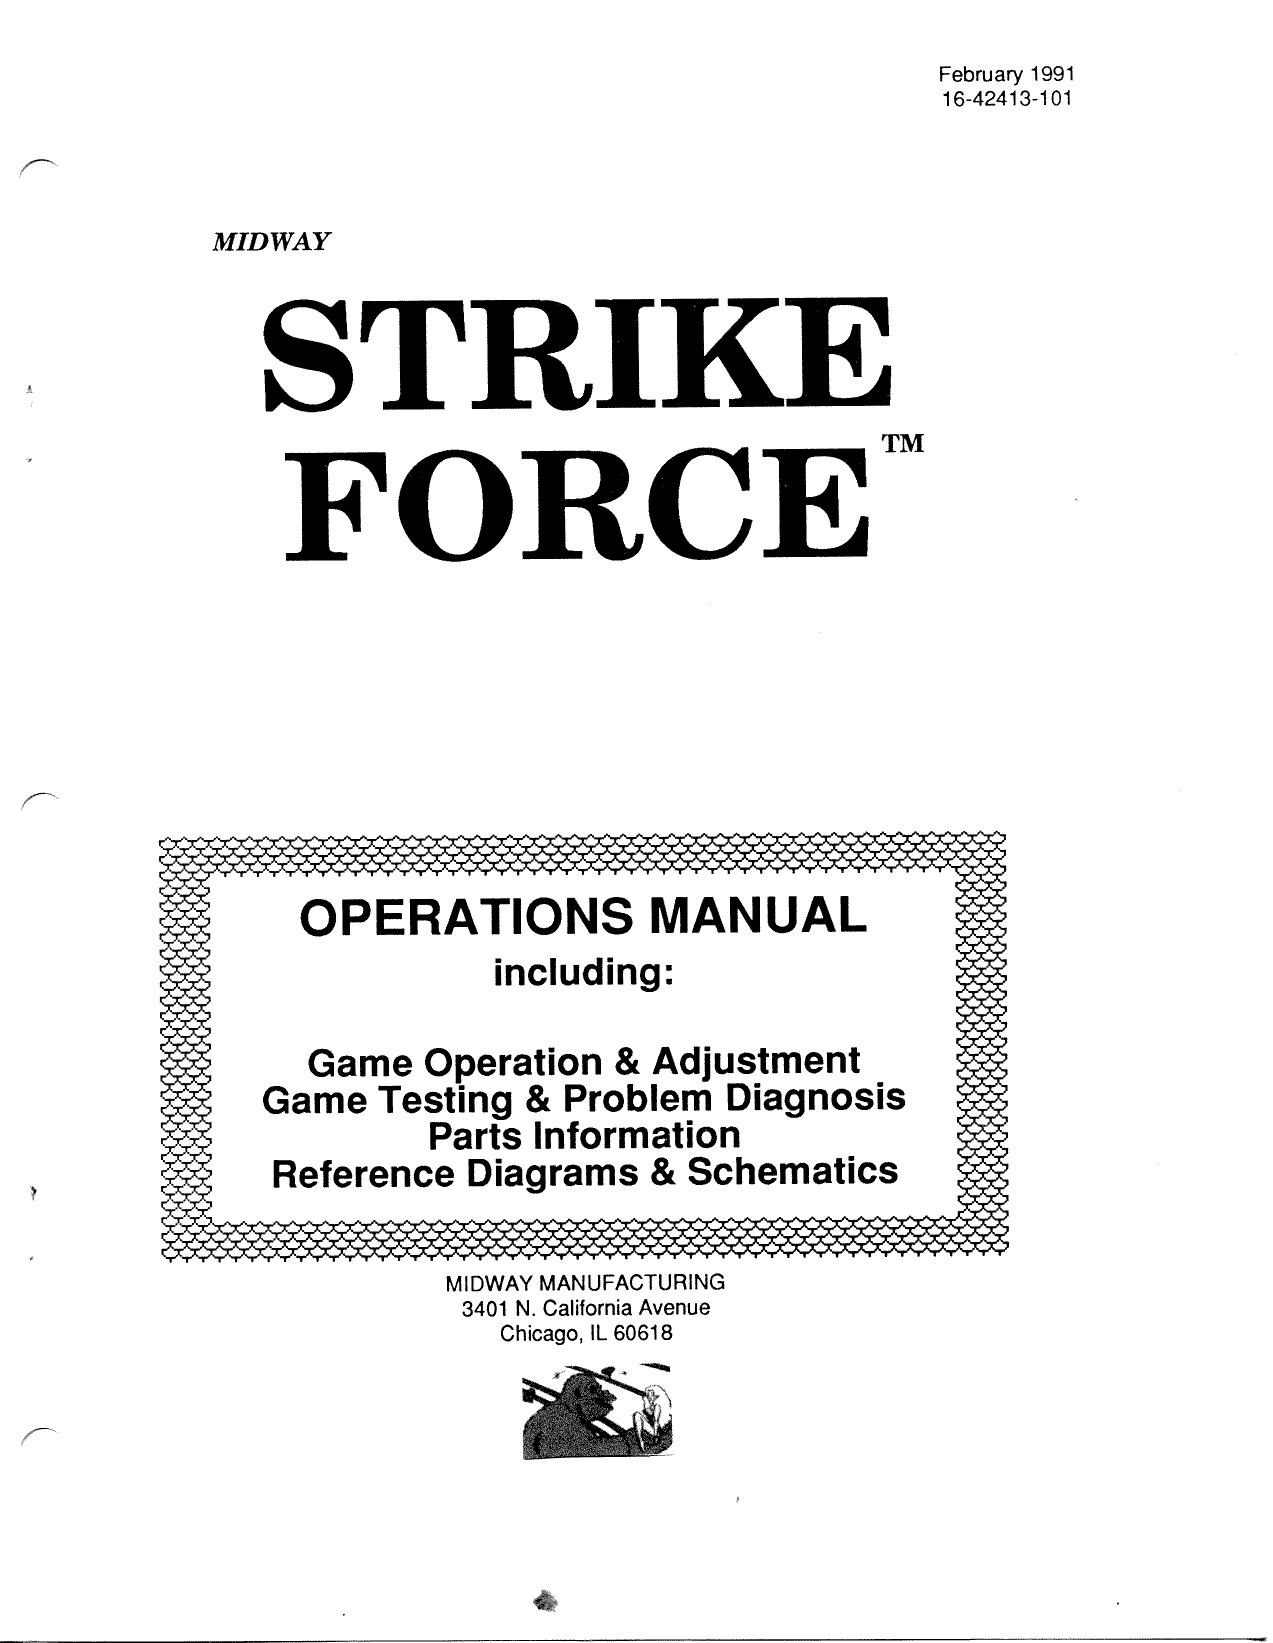 StrikeForce Manual